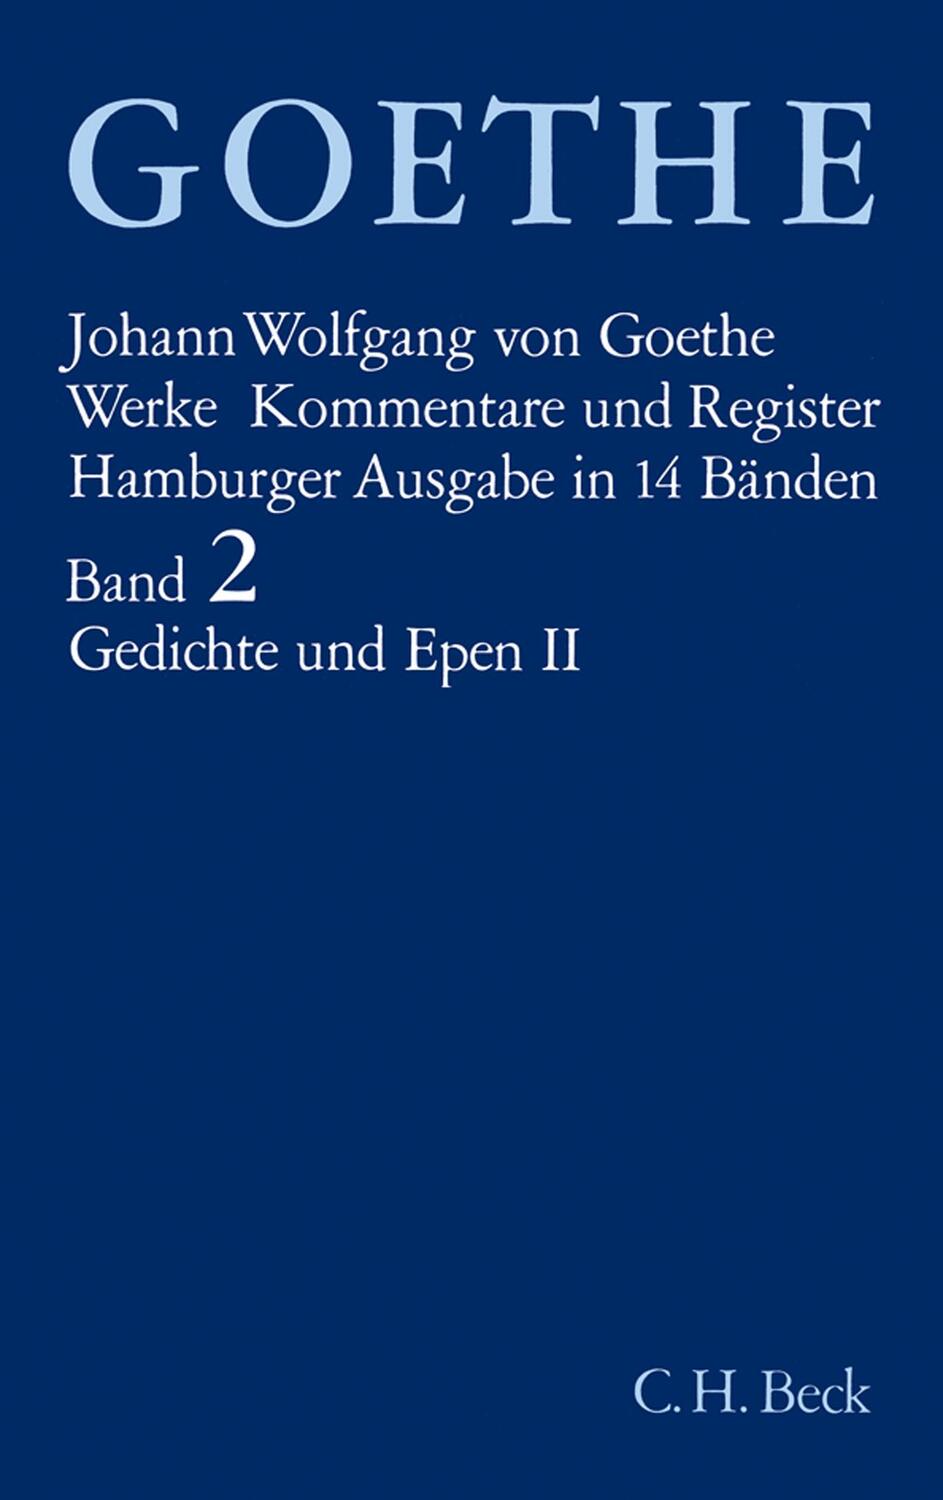 Gedichte und Epen II - Goethe, Johann Wolfgang von